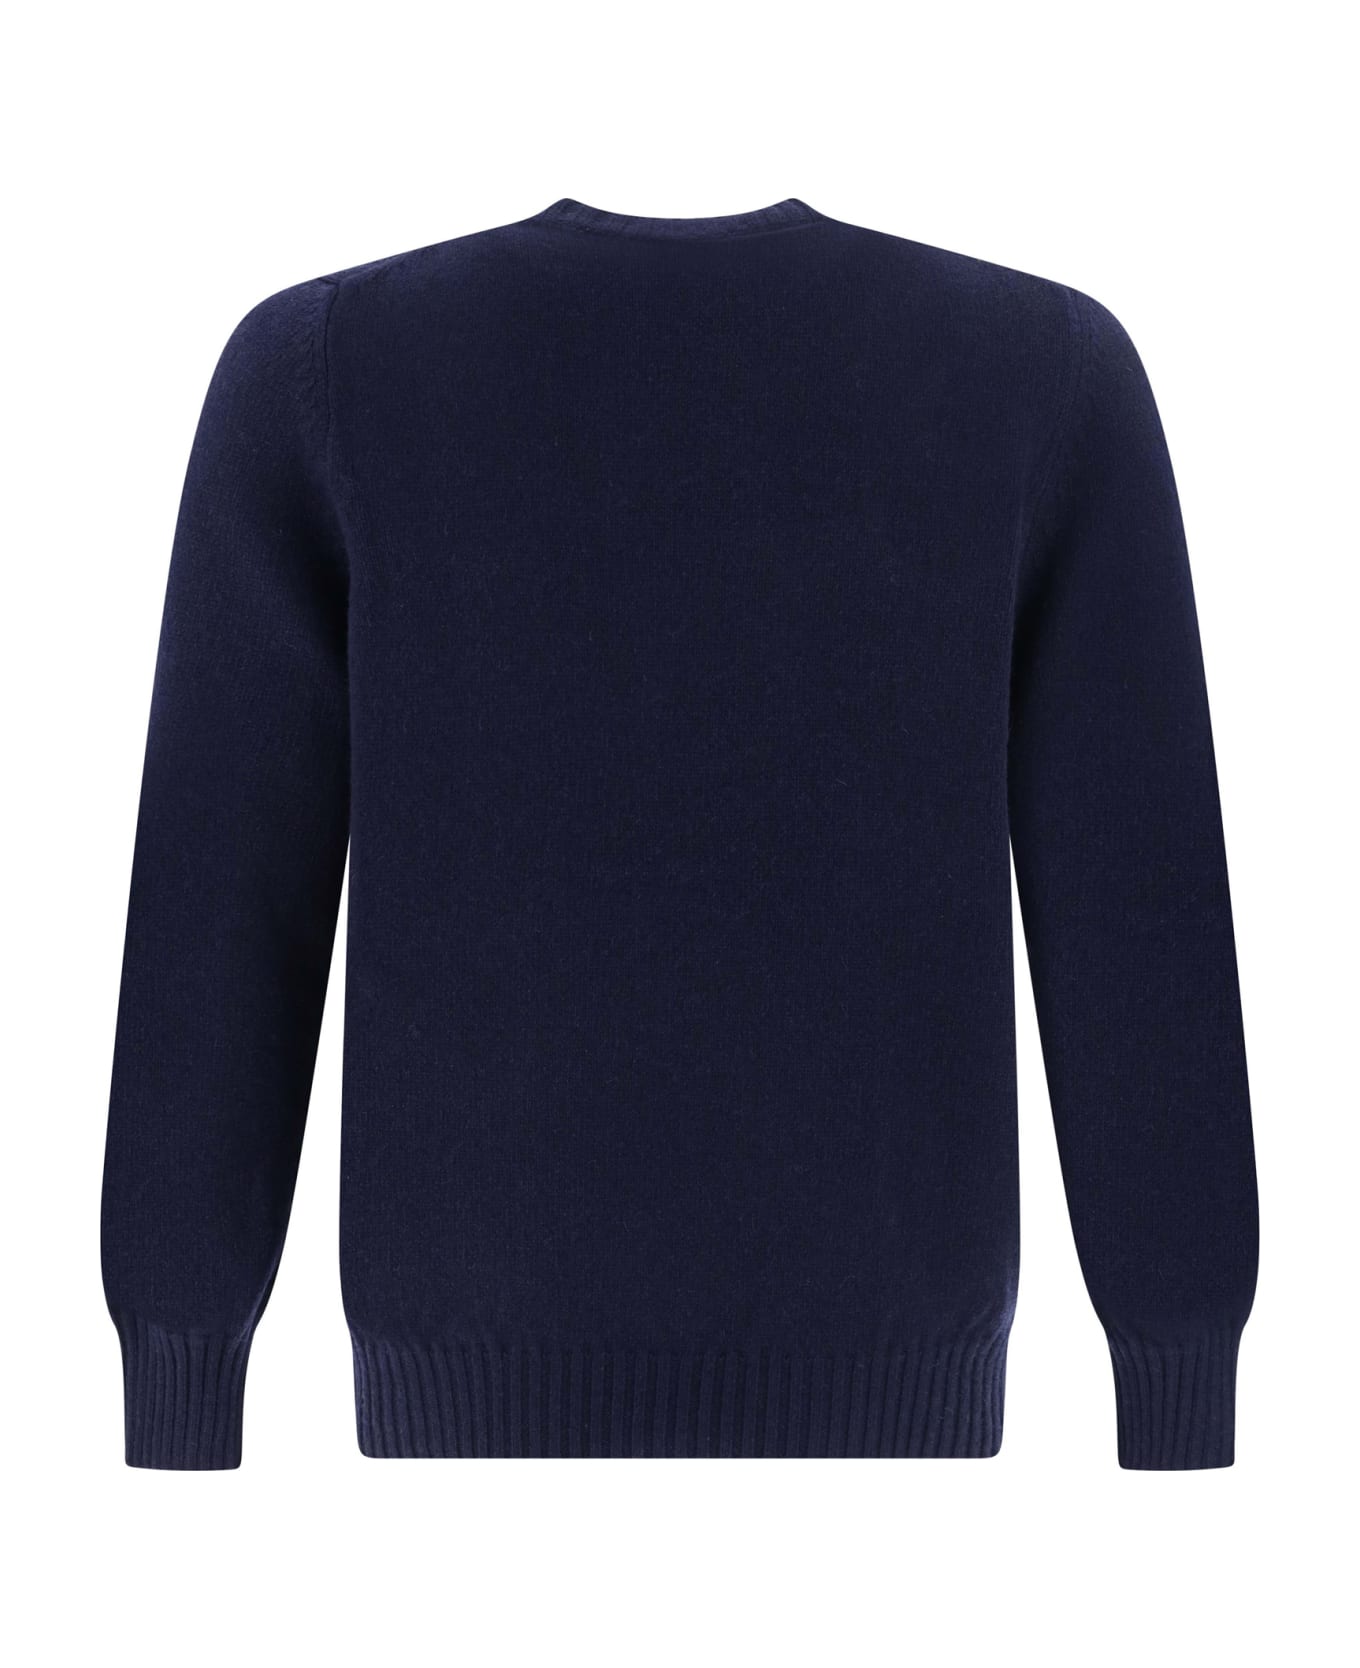 Aragona Sweater - Blu Notte ニットウェア